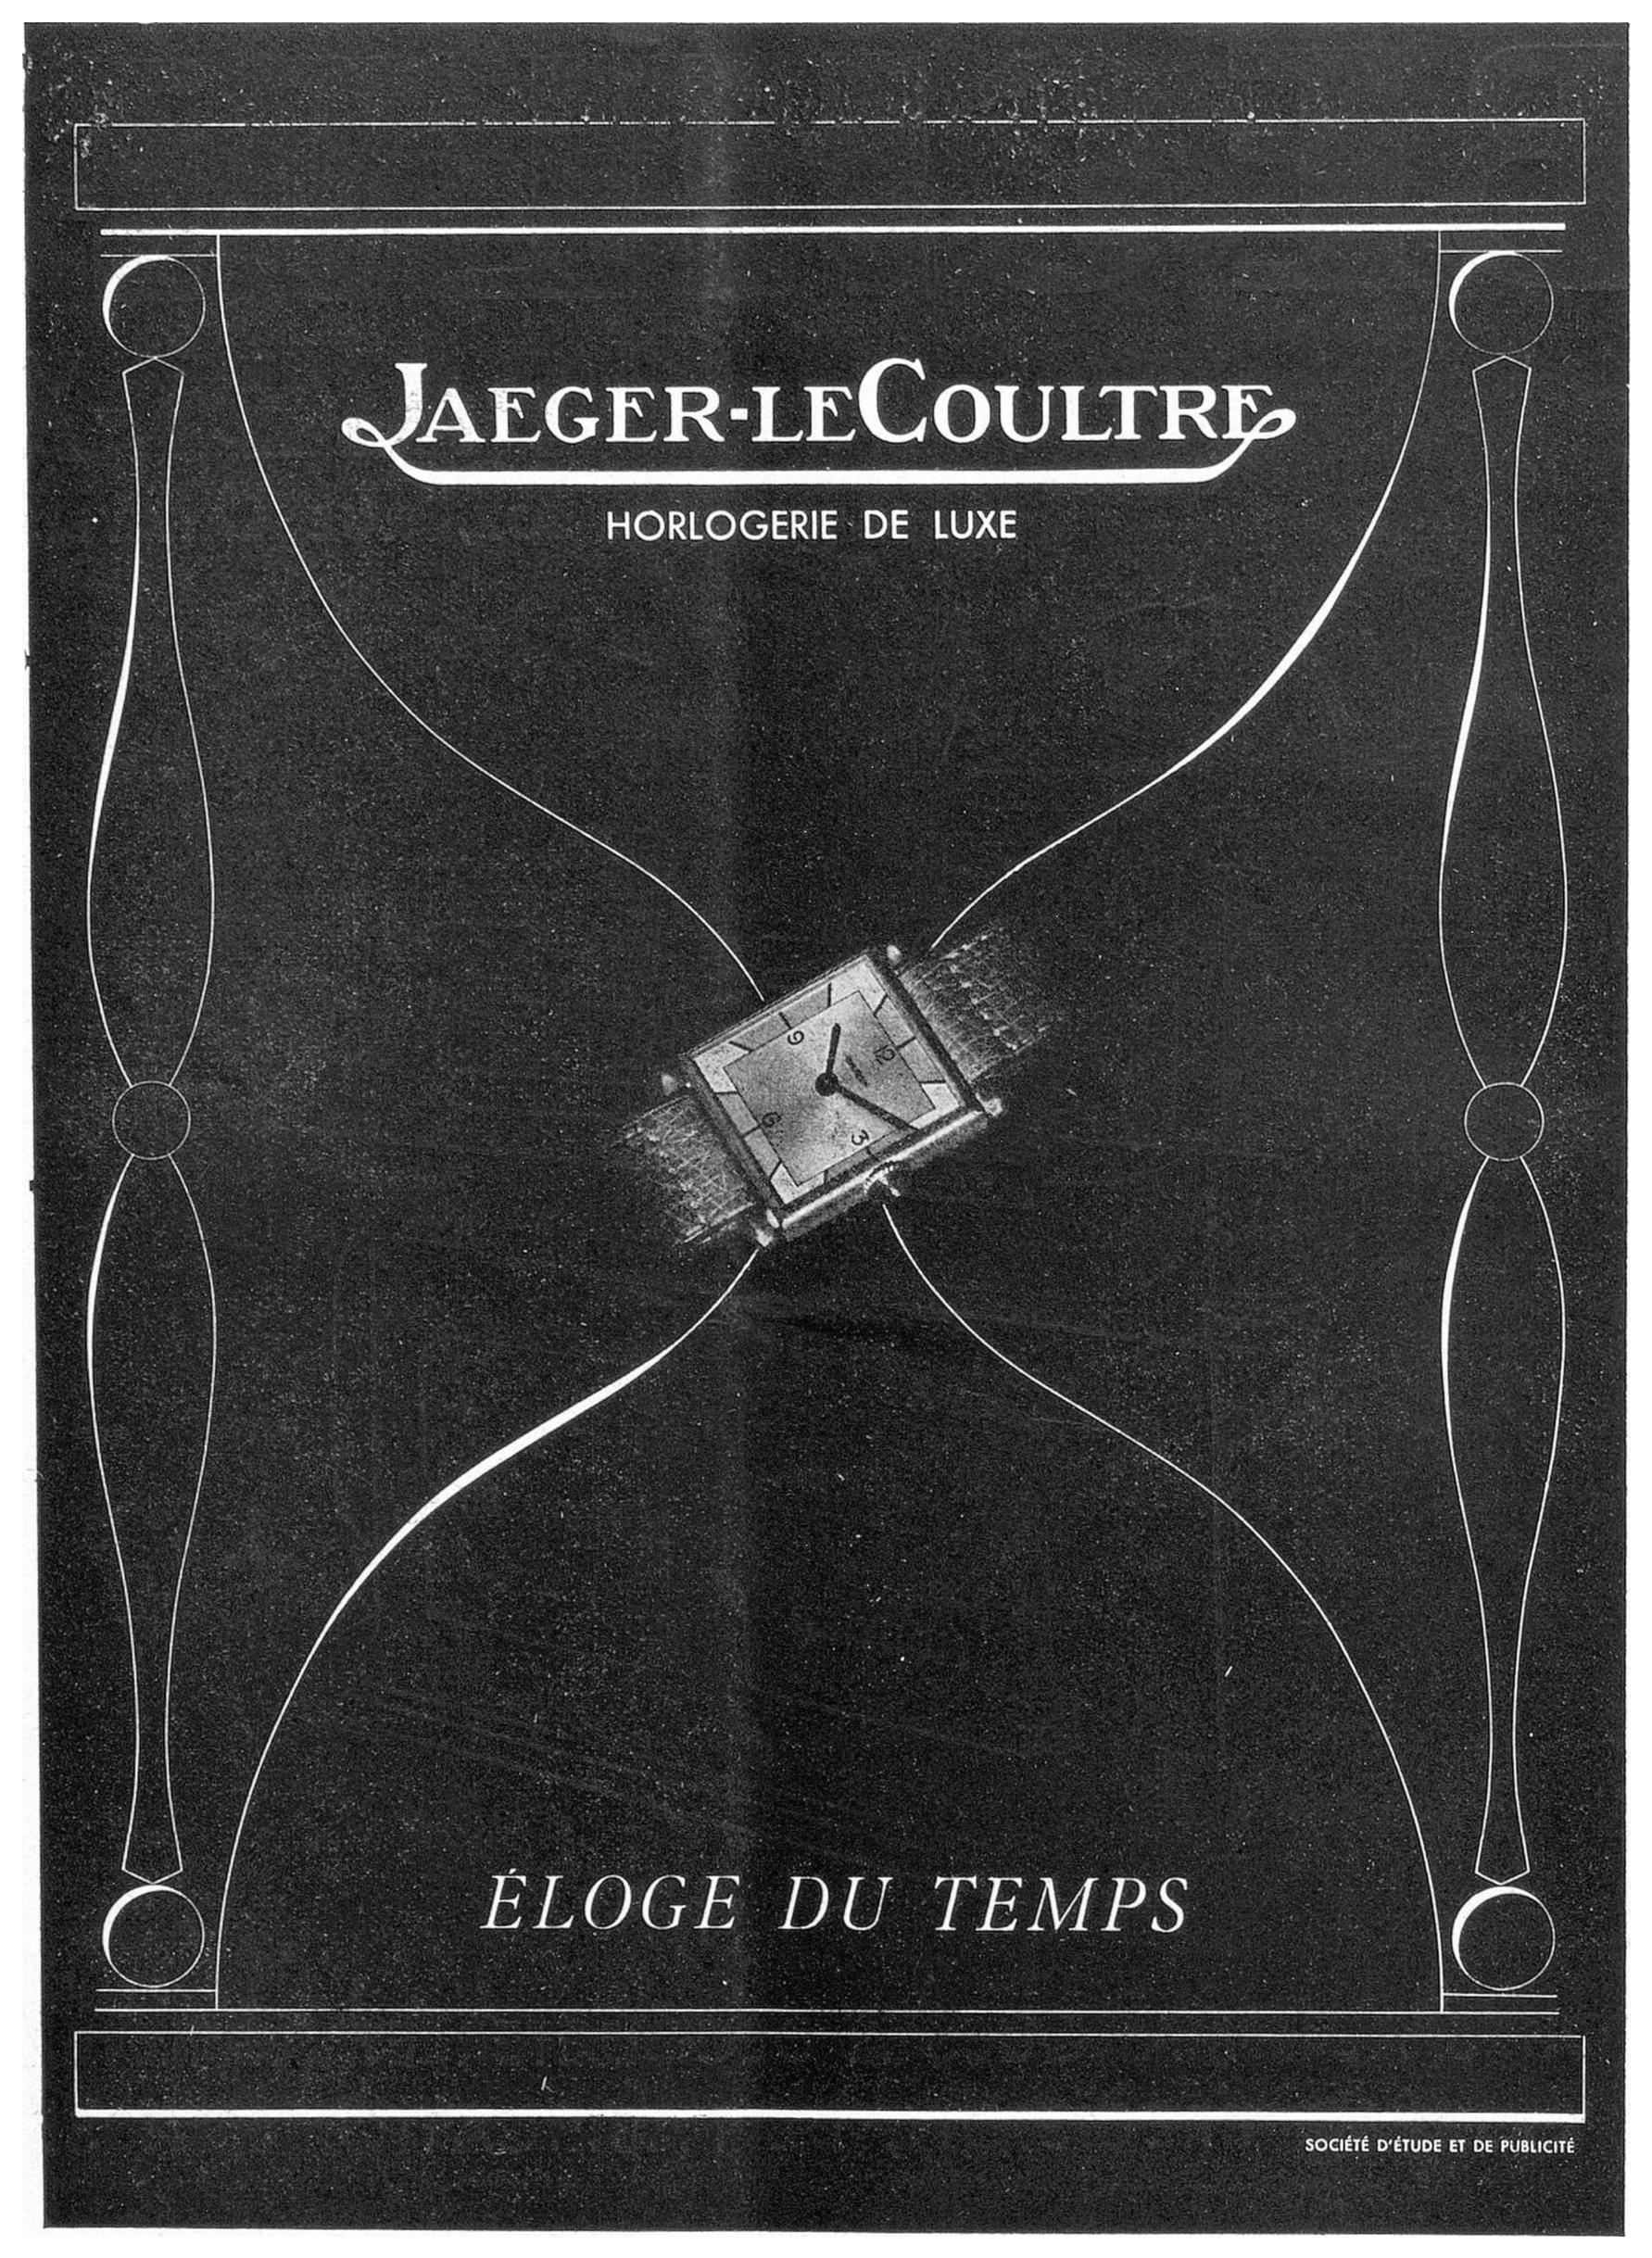 Jaeger-LeCoultre 1946 11.jpg